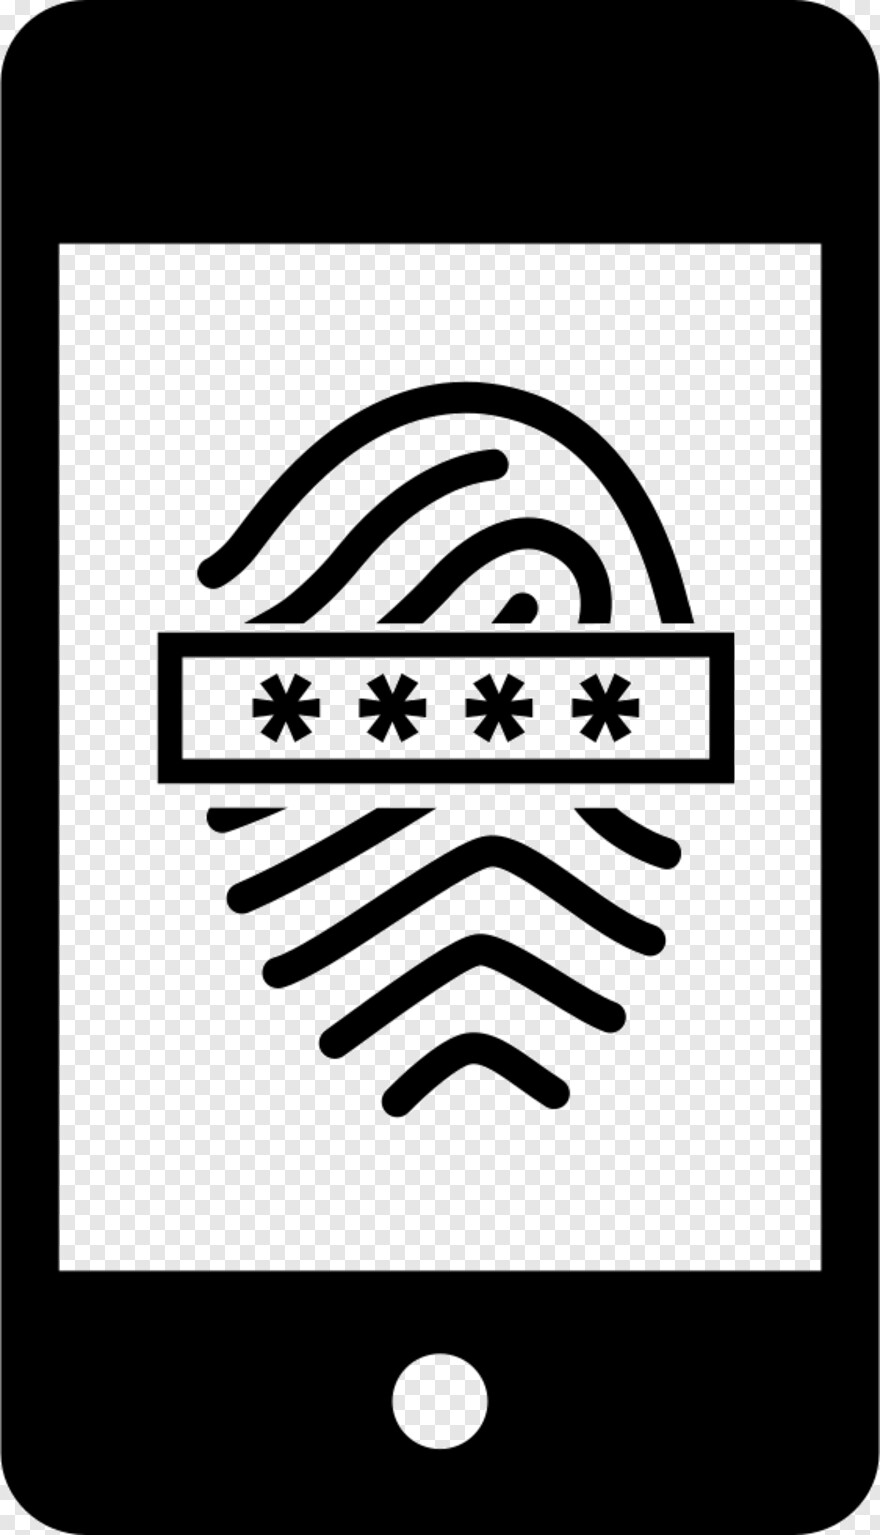 fingerprint-scanner # 976908